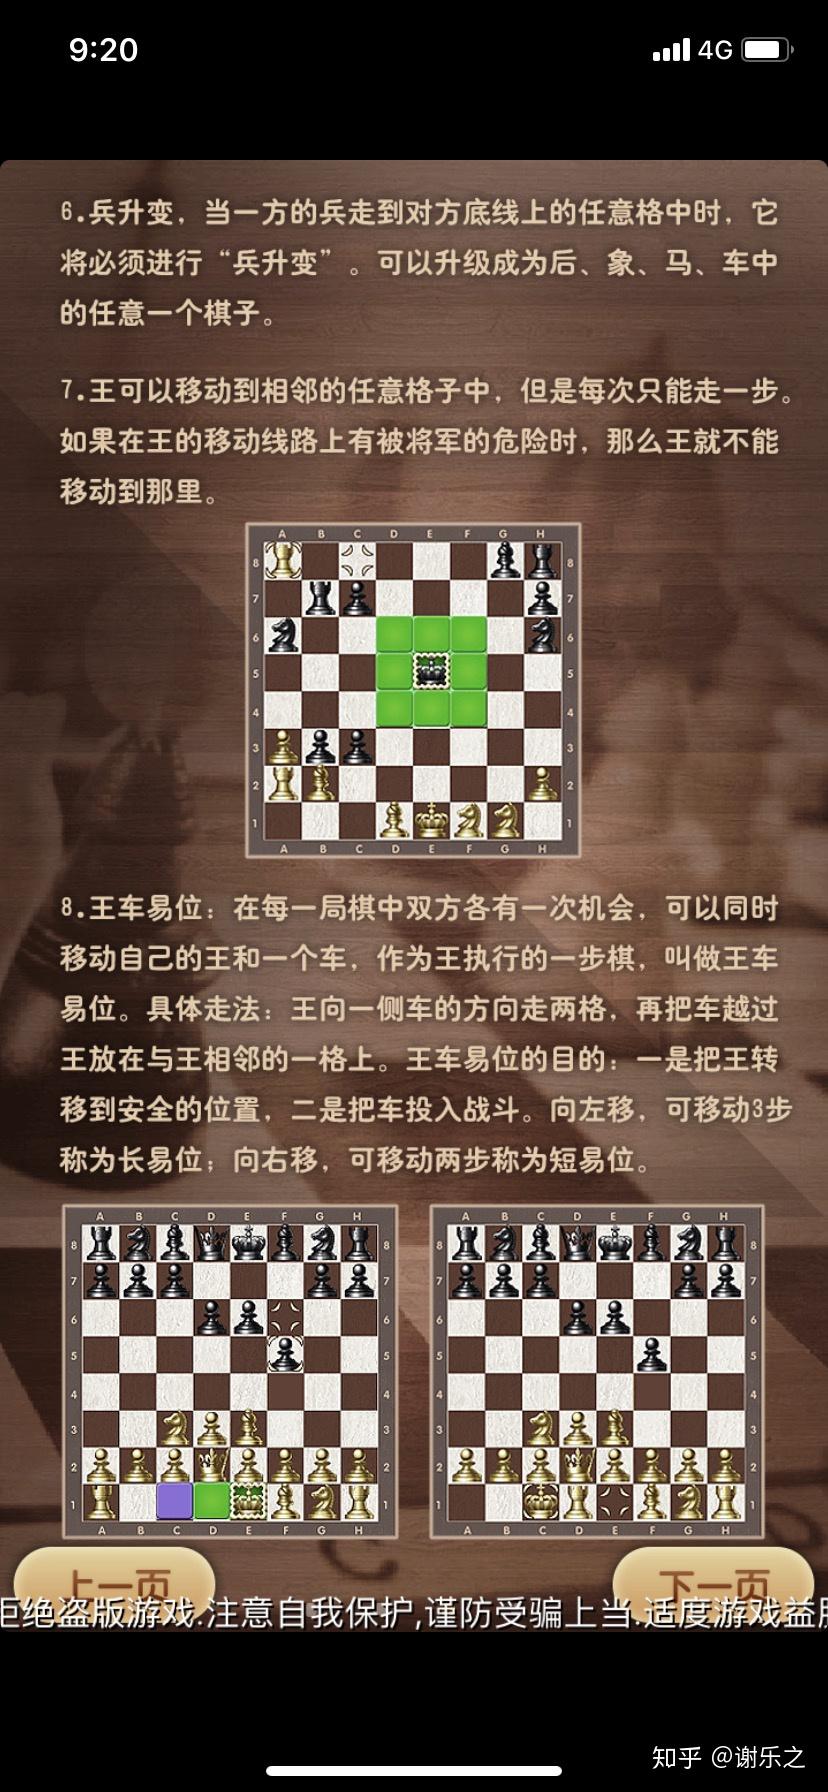 国际象棋基本规则图解图片